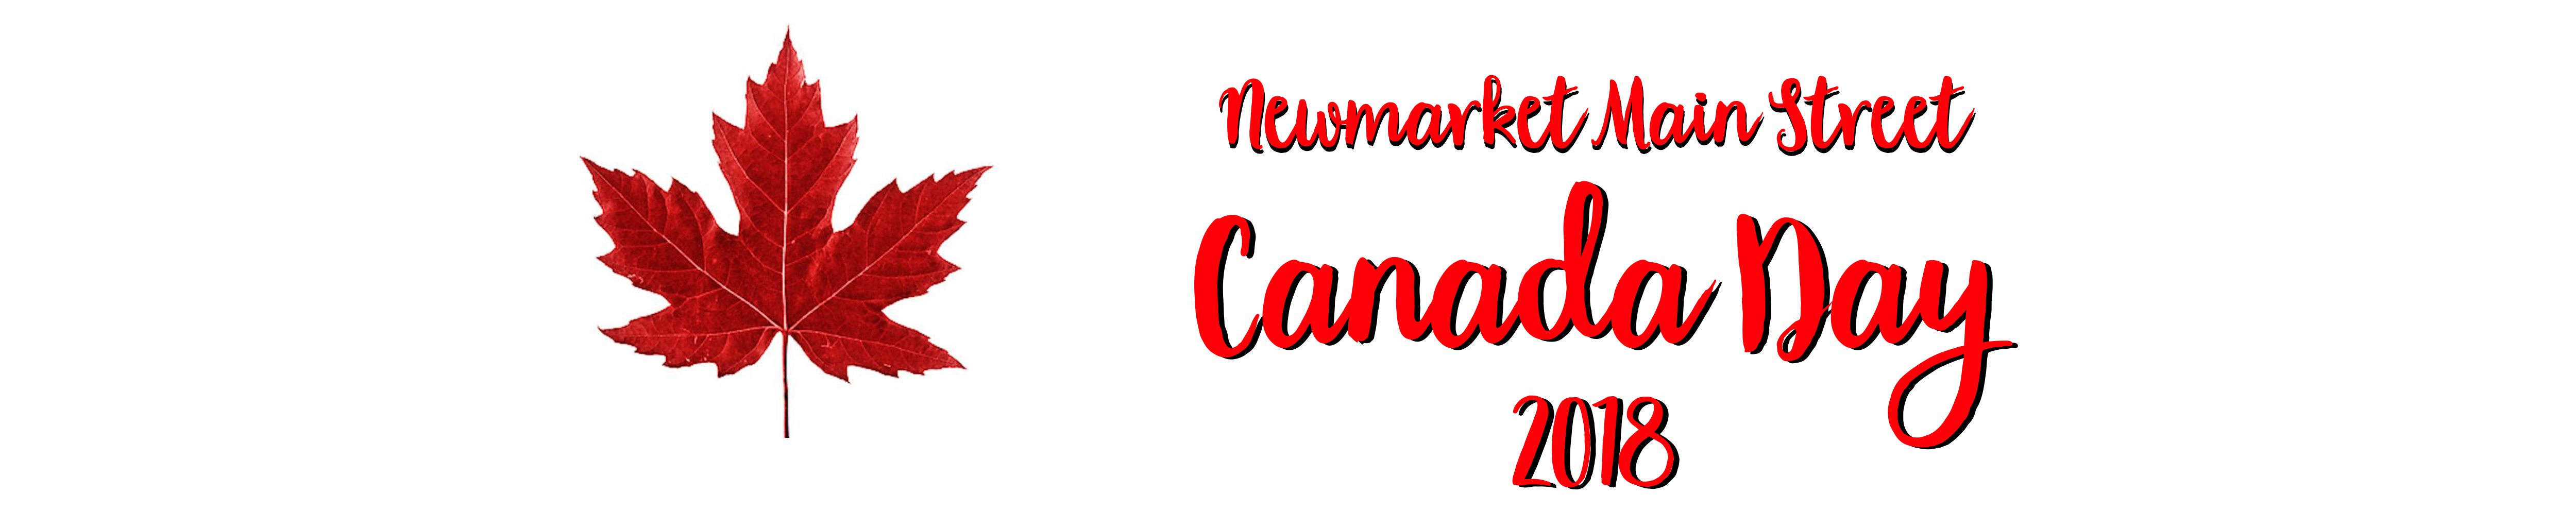 new market main street Canada Day 2018